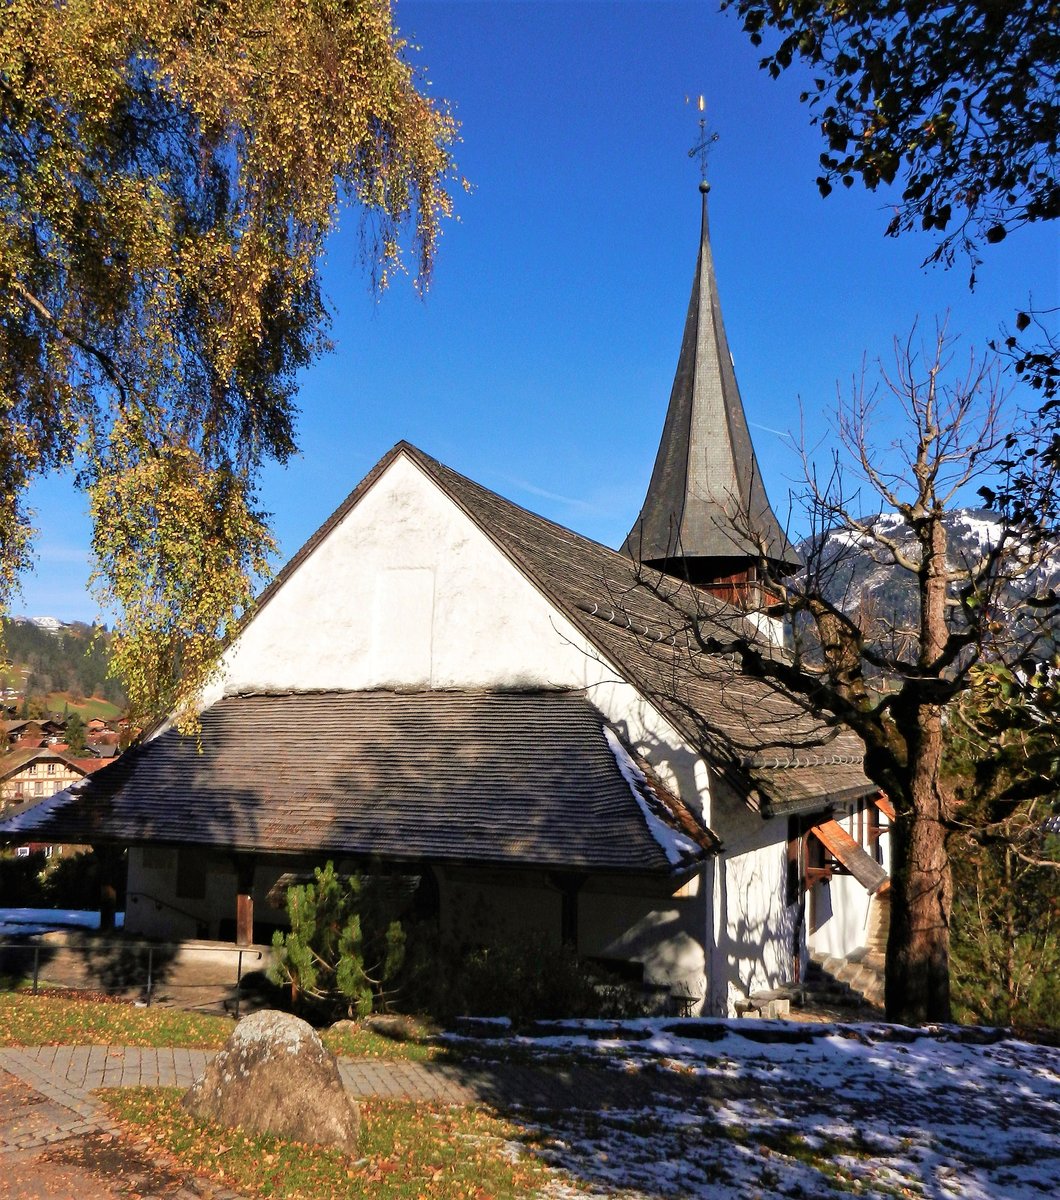 Zweisimmen, Evangelisch Reformierte Kirche, Eingang - 30.10.2012
